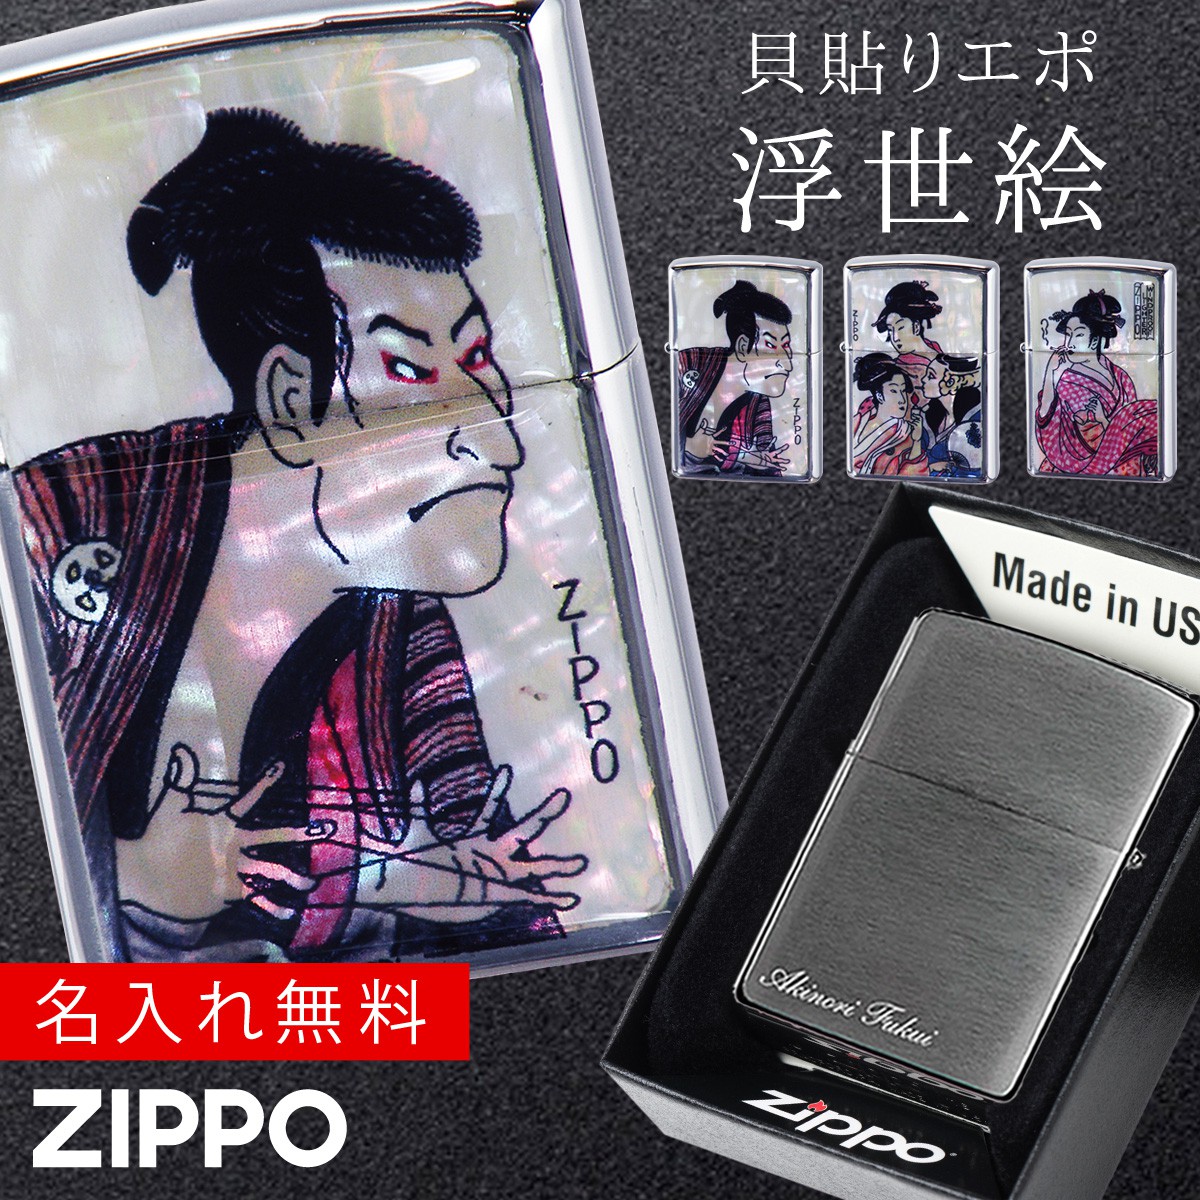 新しいスタイルメーカー直販 の 名入れ無料 これぞ日本人のセンス 遊び心ある日本のジッポ 返品不可 Zippo ジッポー ライター ジッポライター Zippo ブランド 名入れ 彫刻 名前入り オイルライター 0 メンズ 男性 かっこいい カッコいい デザイン 父の日 和柄